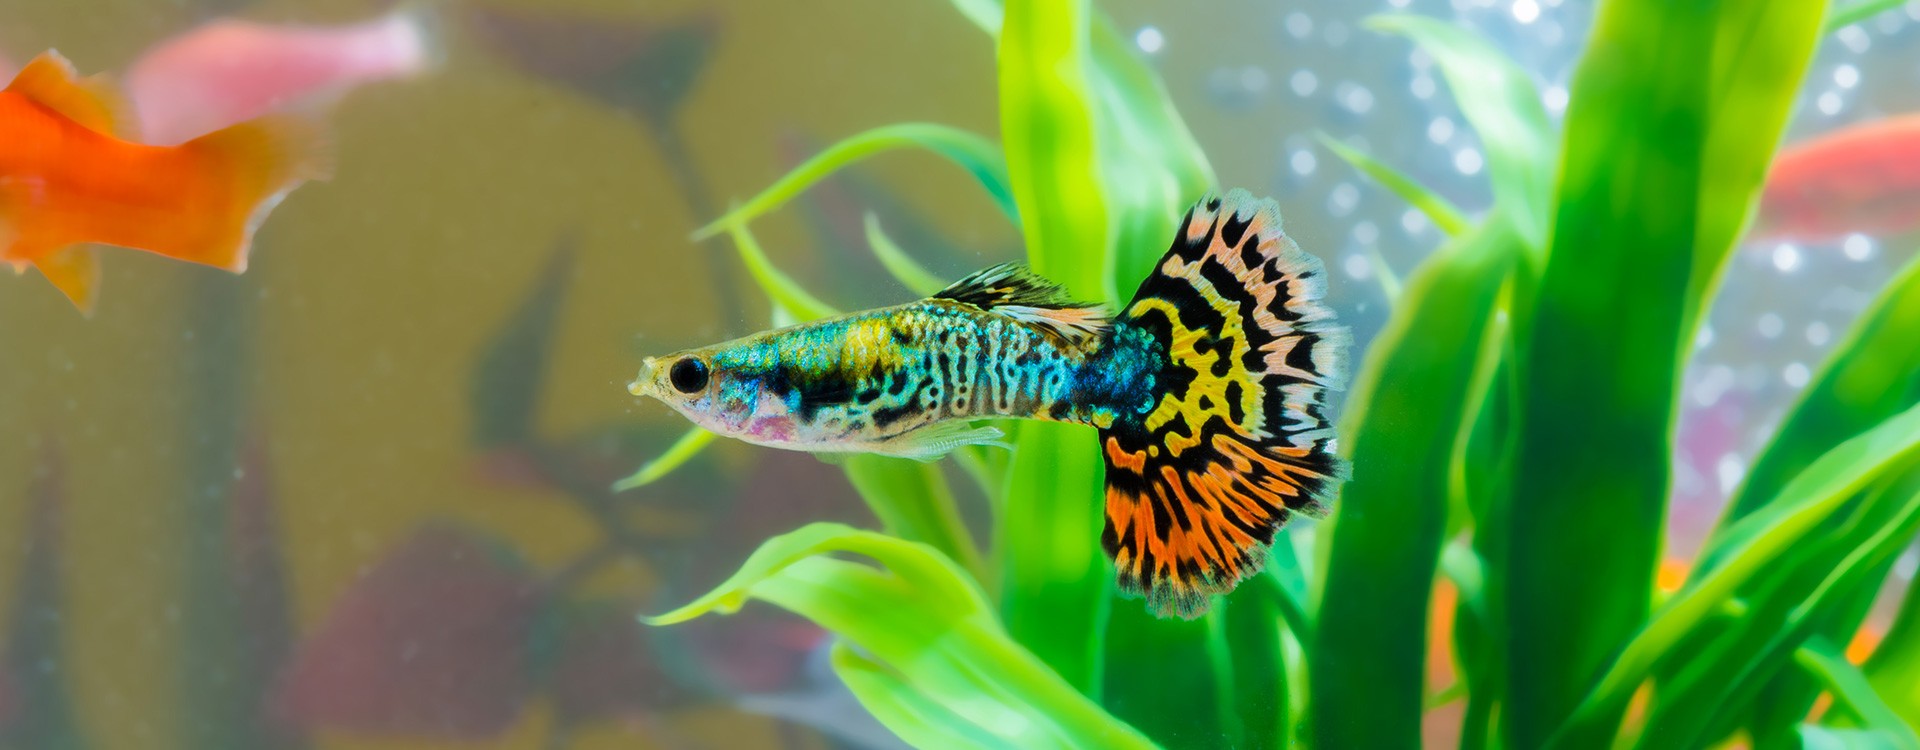 Gupik Pawie Oczko - jak zadbać o tę piękną rybę i zapewnić jej najlepsze warunki w Twoim akwarium?